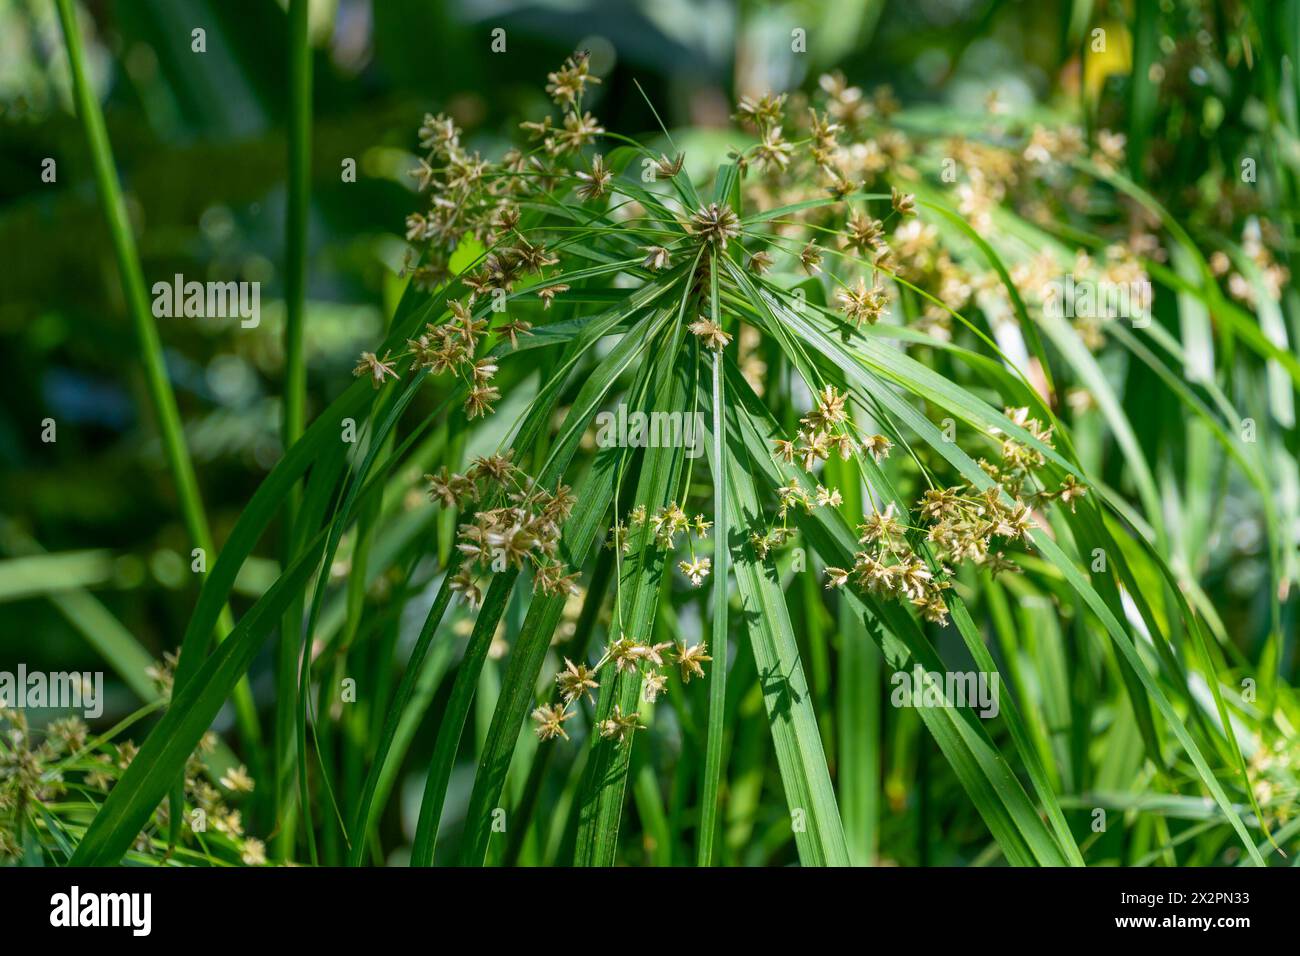 Cyperus alternifolius, the umbrella papyrus, umbrella sedge, umbrella palm. family Cyperaceae. Stock Photo